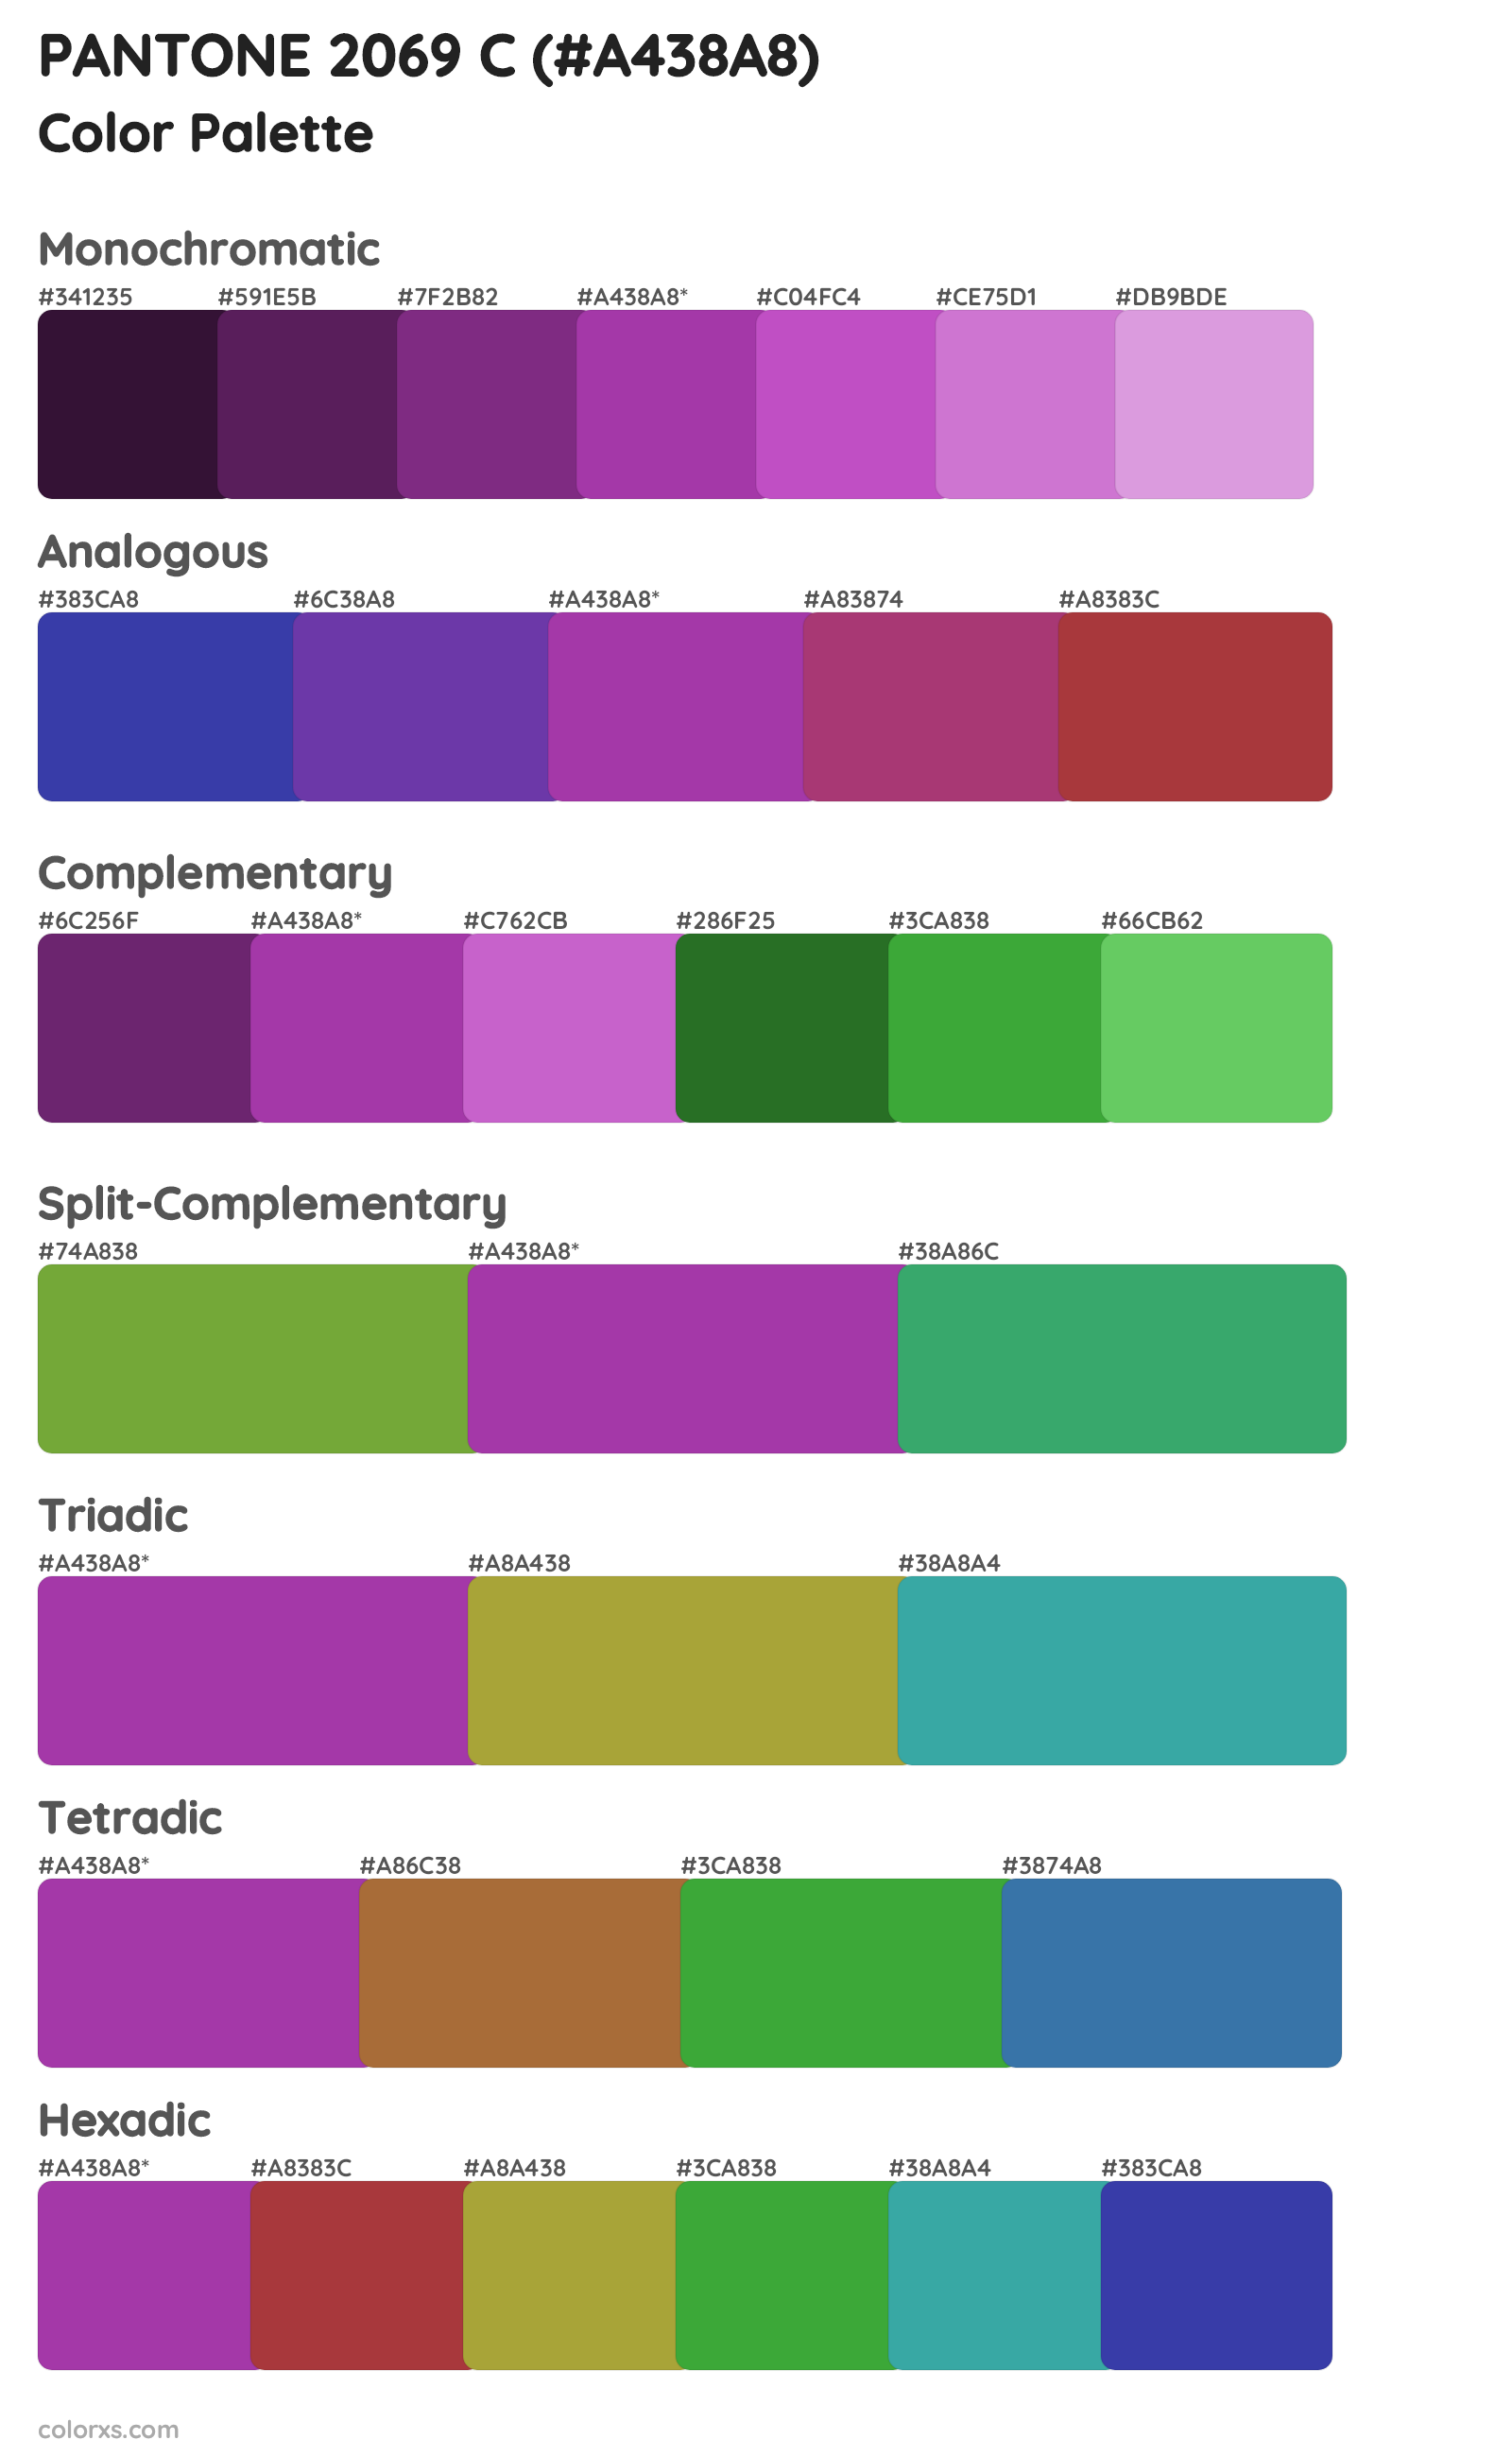 PANTONE 2069 C Color Scheme Palettes